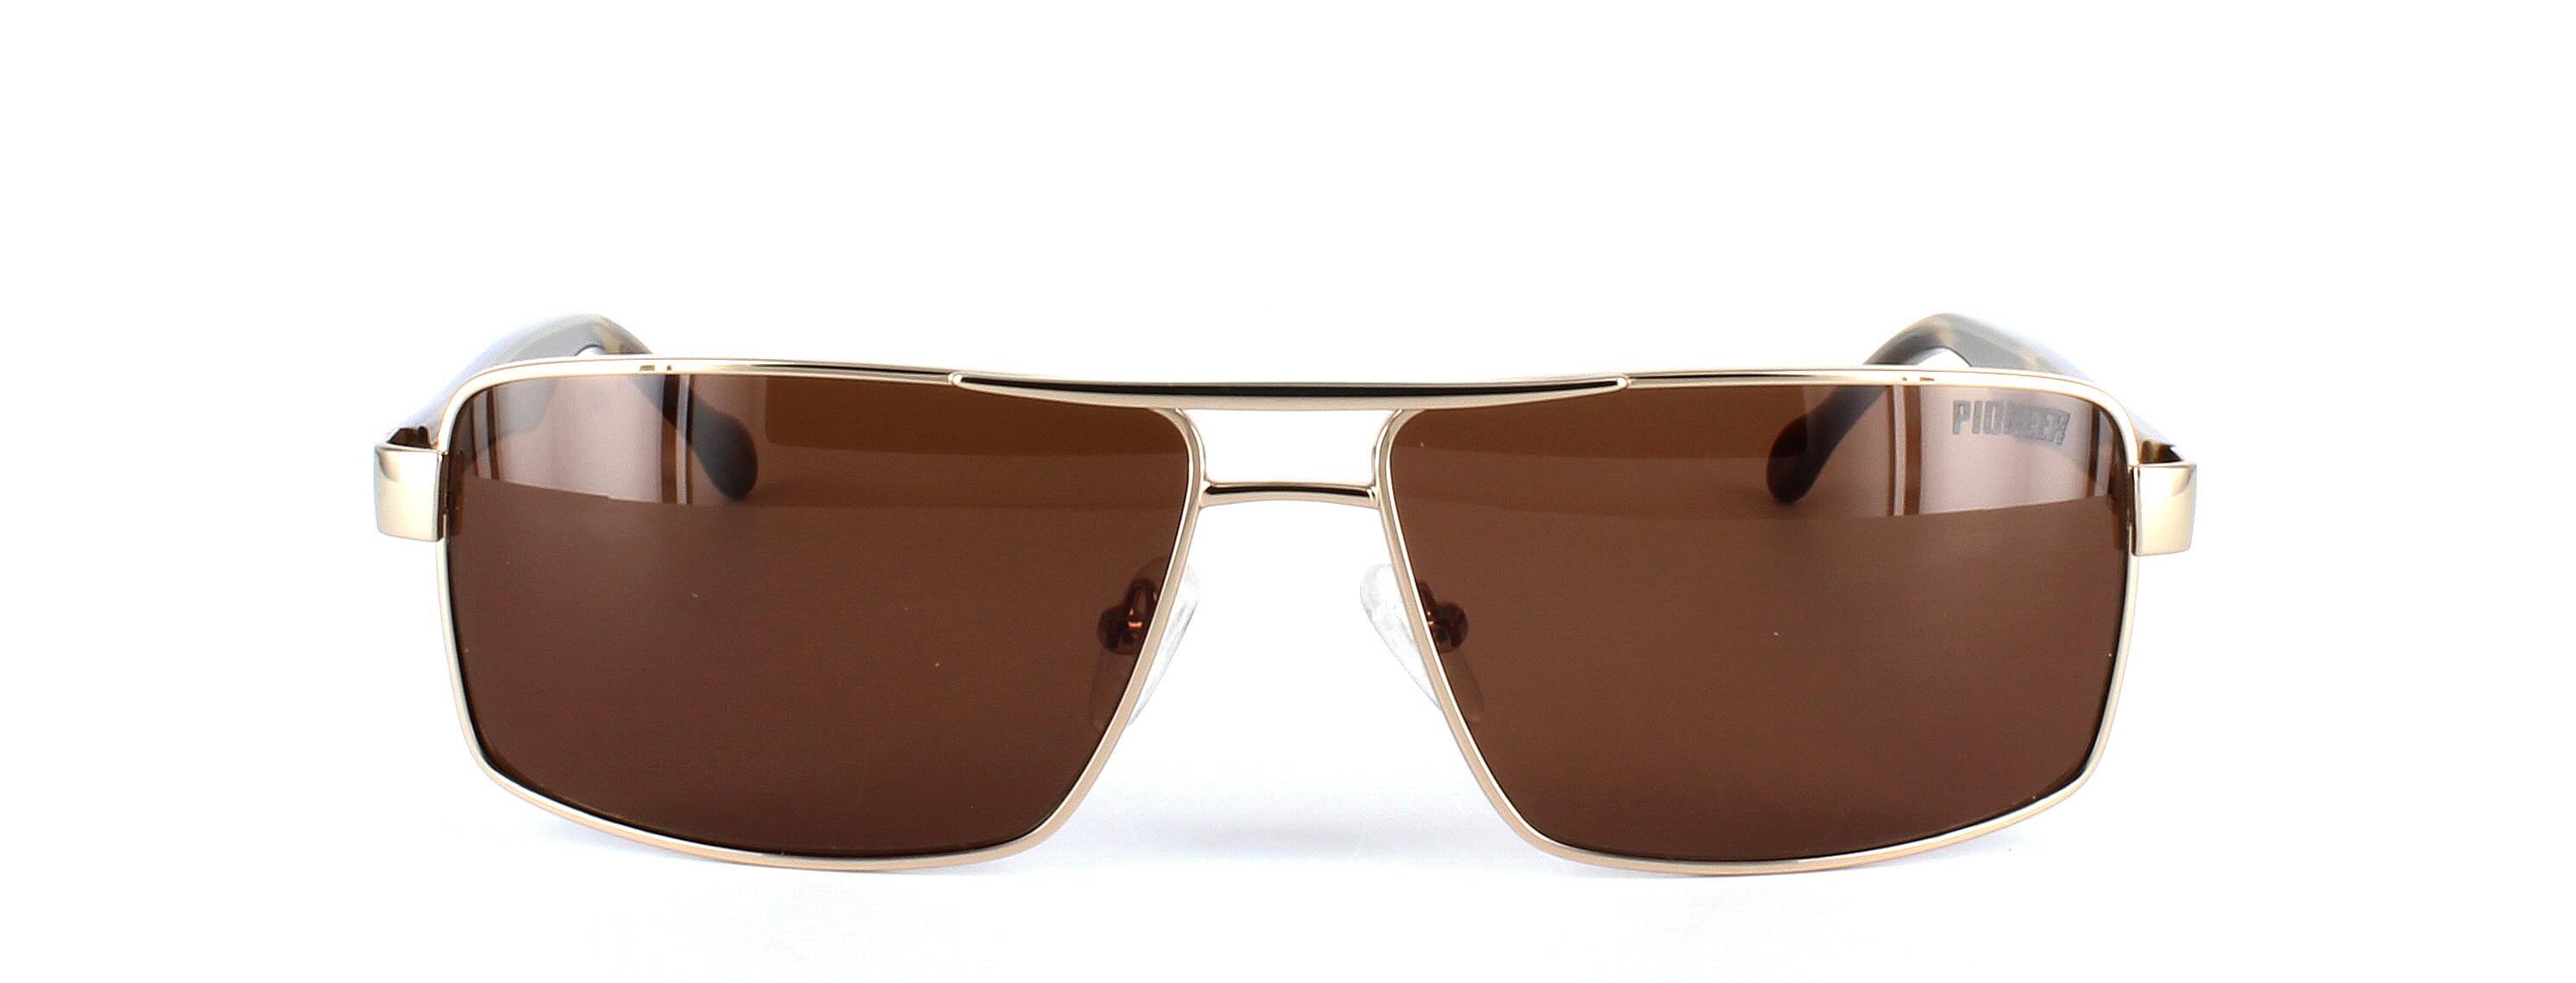 Odonata - Unisex aviator style prescription sunglasses in gold - image view 5